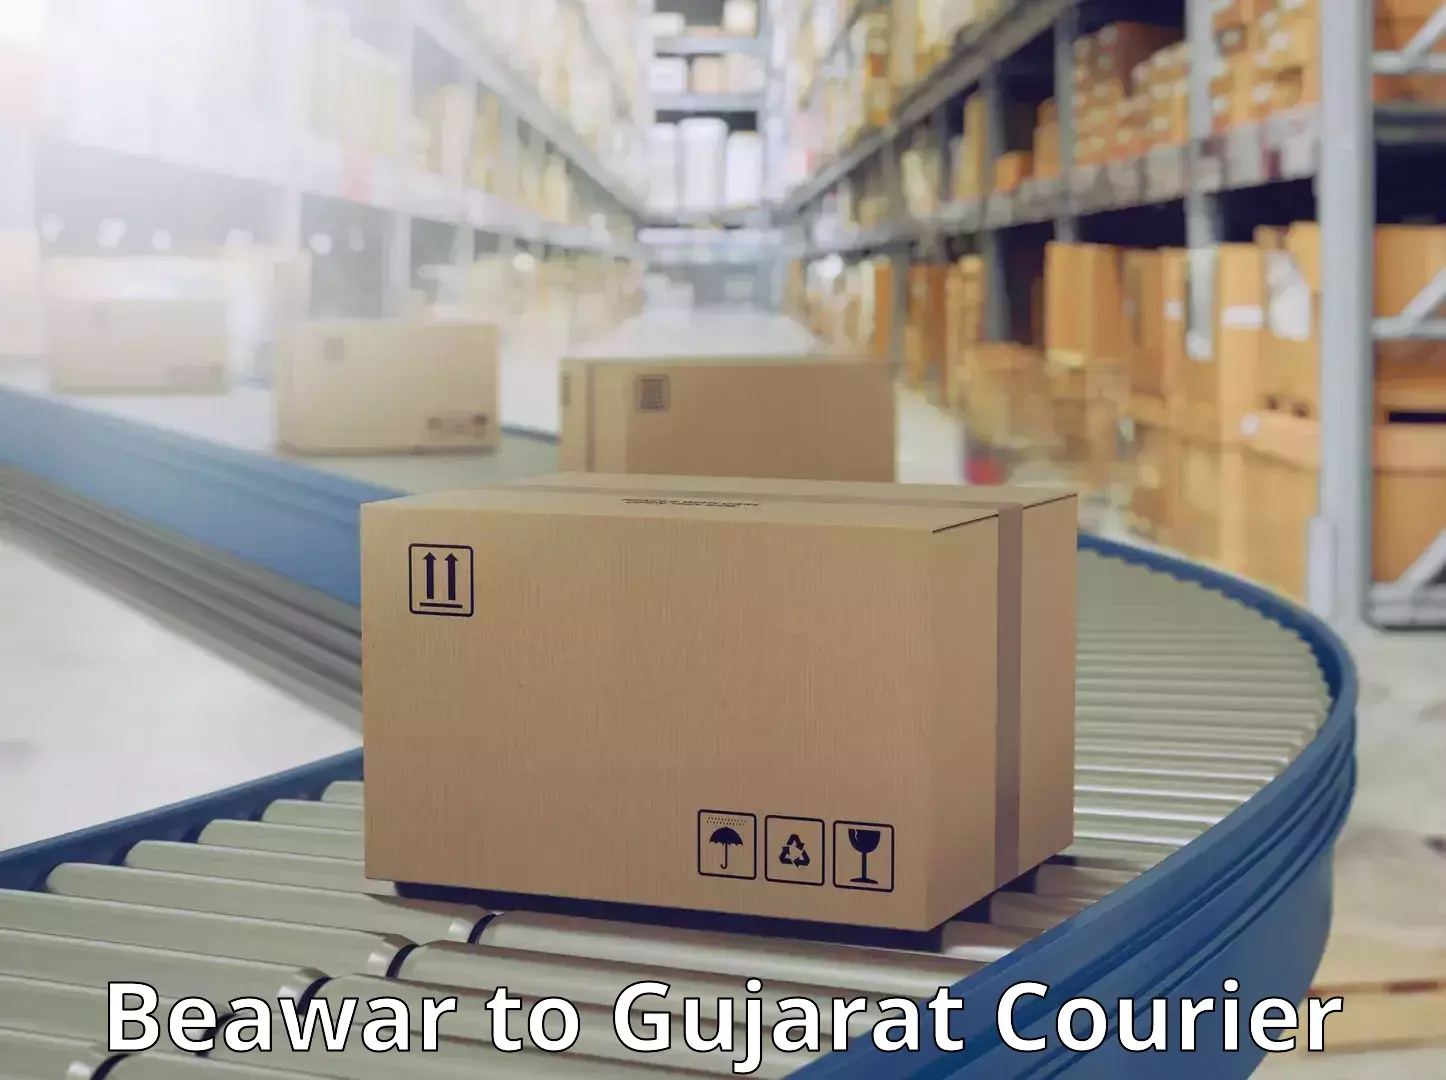 Modern courier technology Beawar to Gujarat